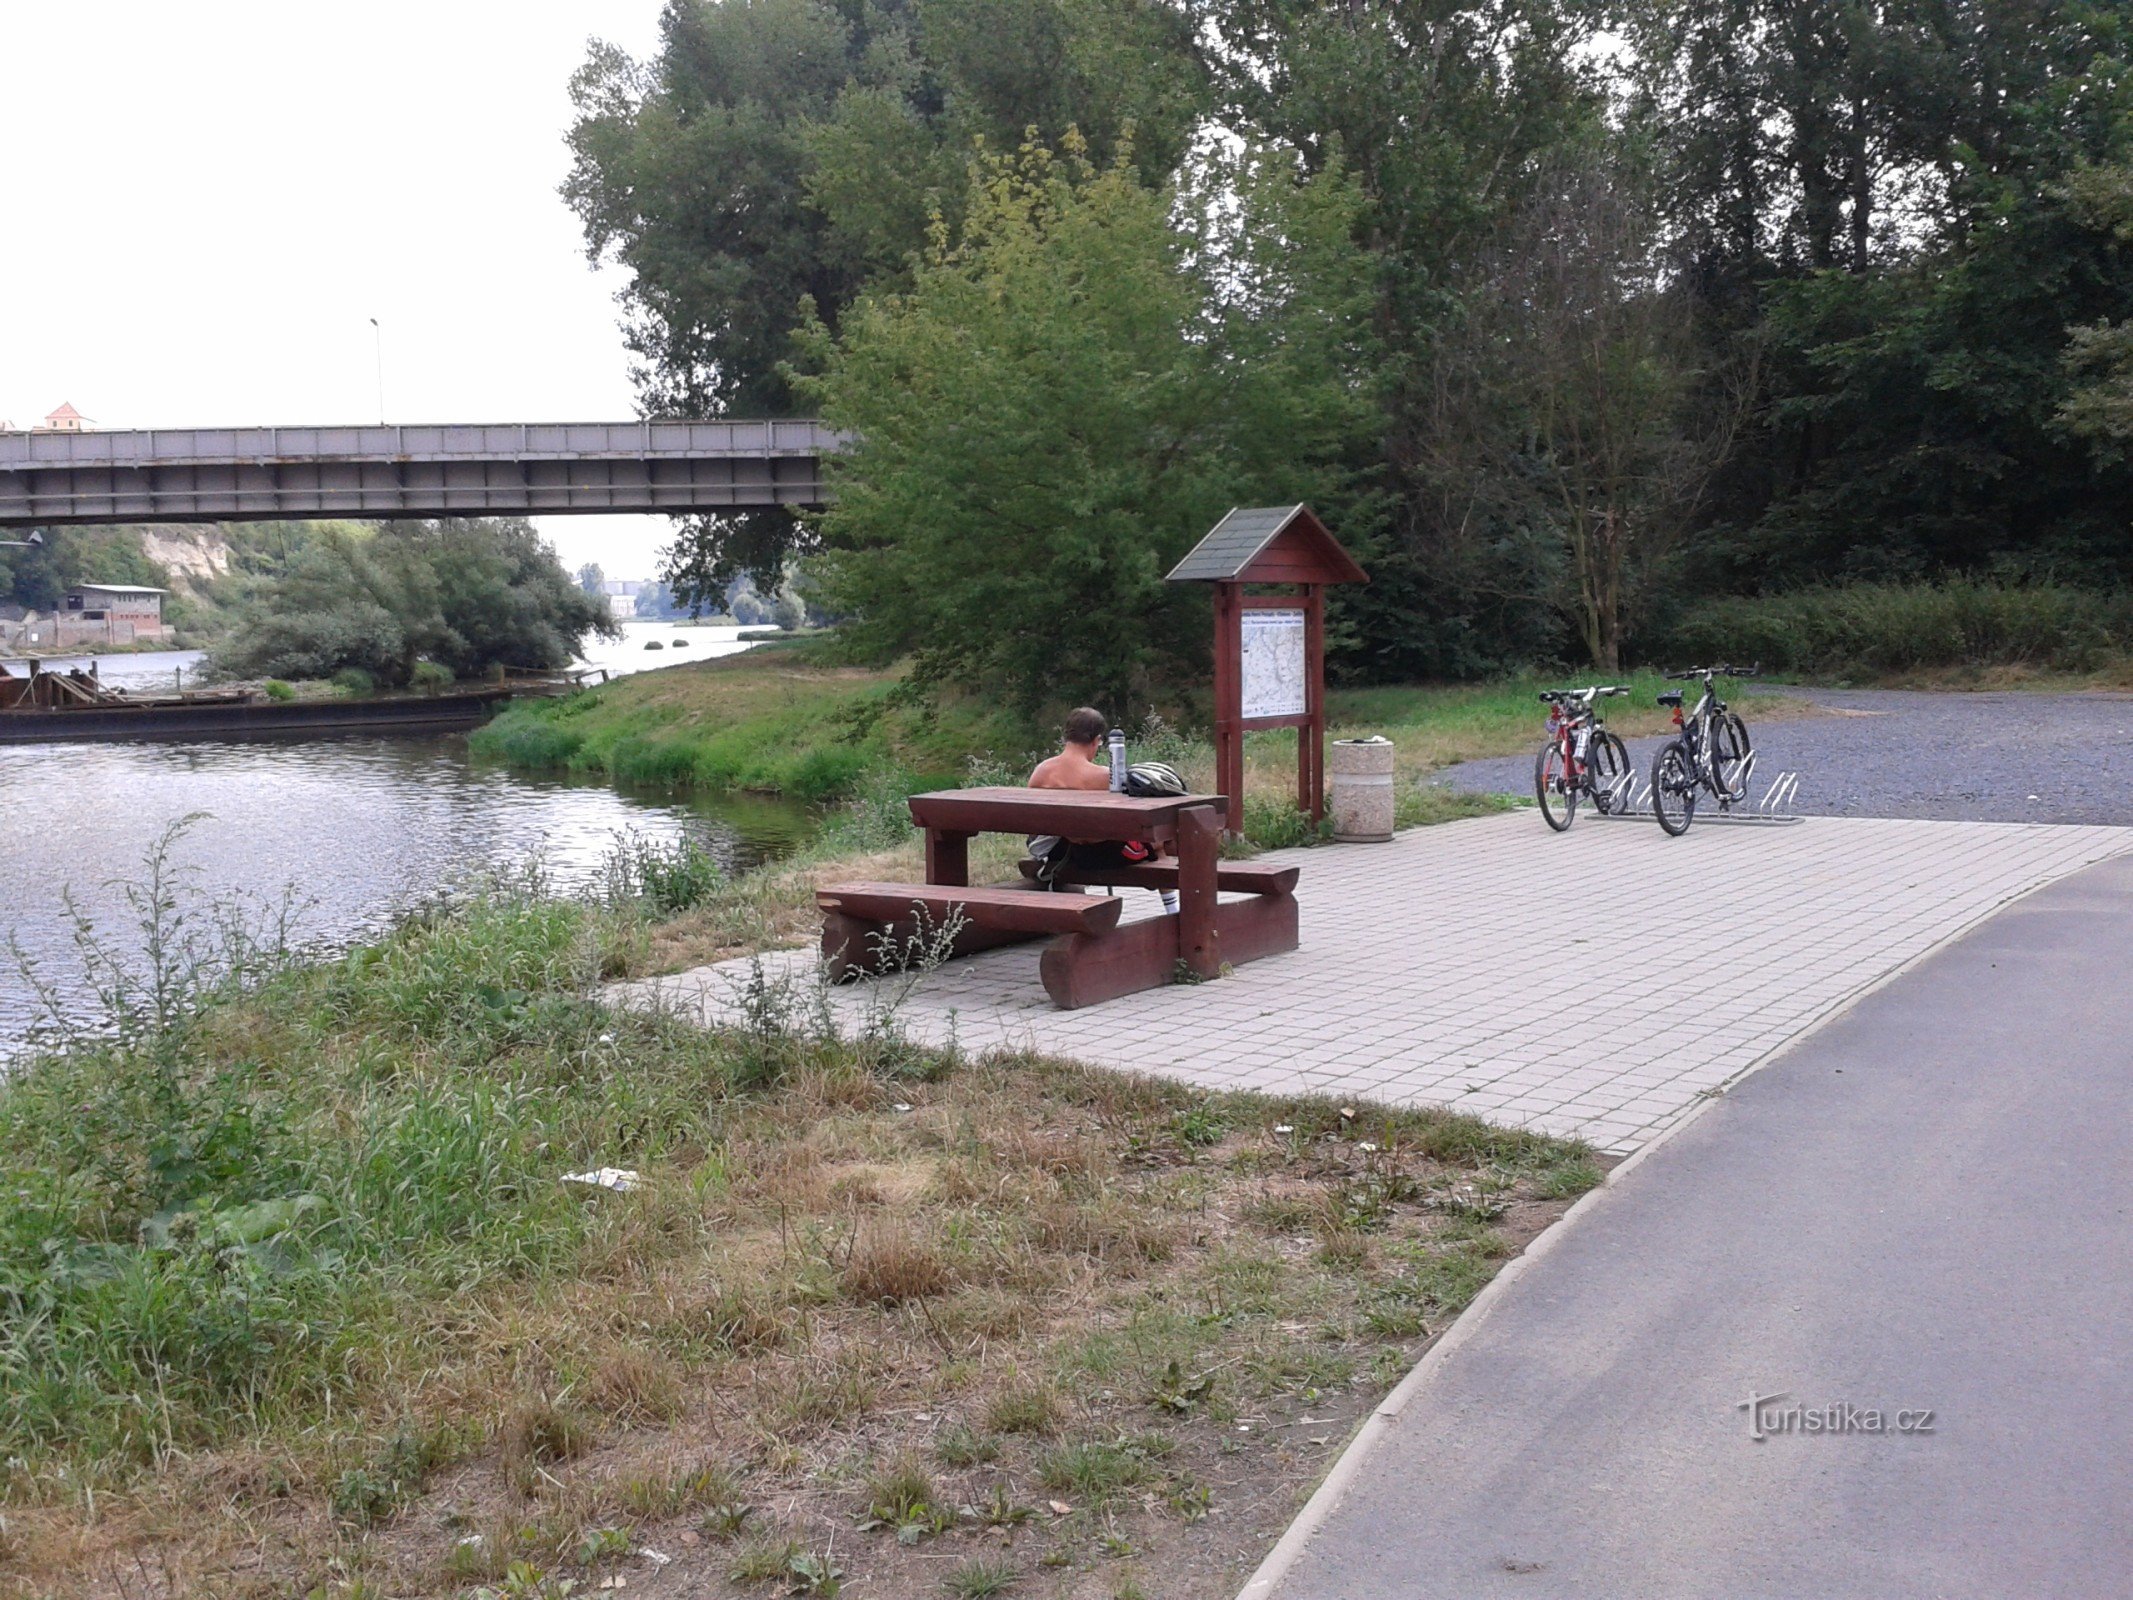 Voyage à vélo le long de l'Elbe de Mělník à Stará Boleslav